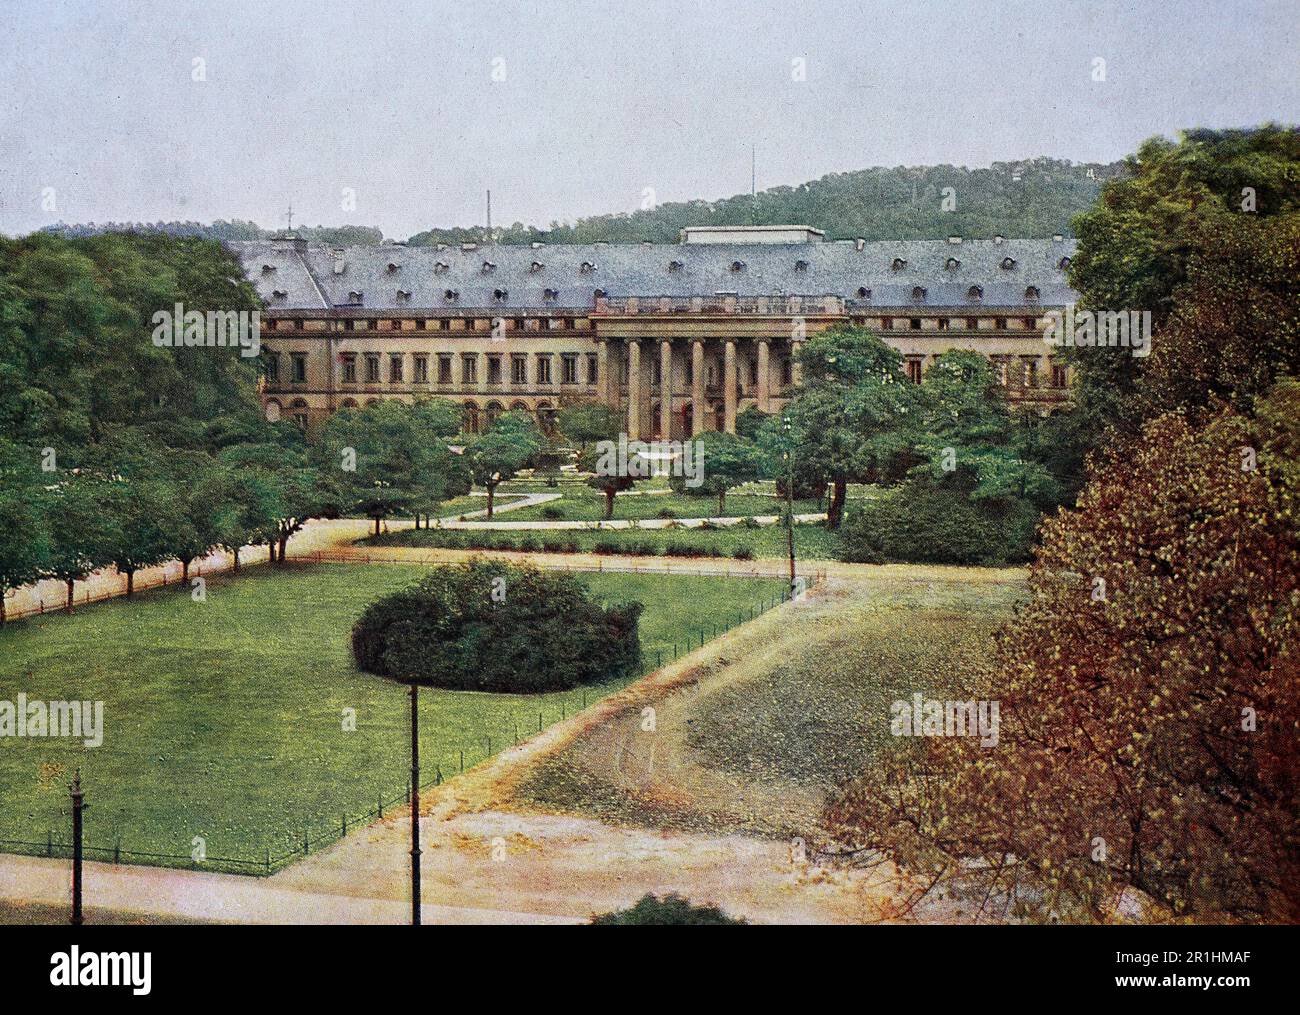 Das Schloß in Koblenz im Jahre 1910, Rheinland-Pfalz, Fotografie, ristorante digitale Reproduktion einer Originalvorlage aus dem frühen 20. Jahrhundert, genaues Originalatum nicht bekannt Foto Stock